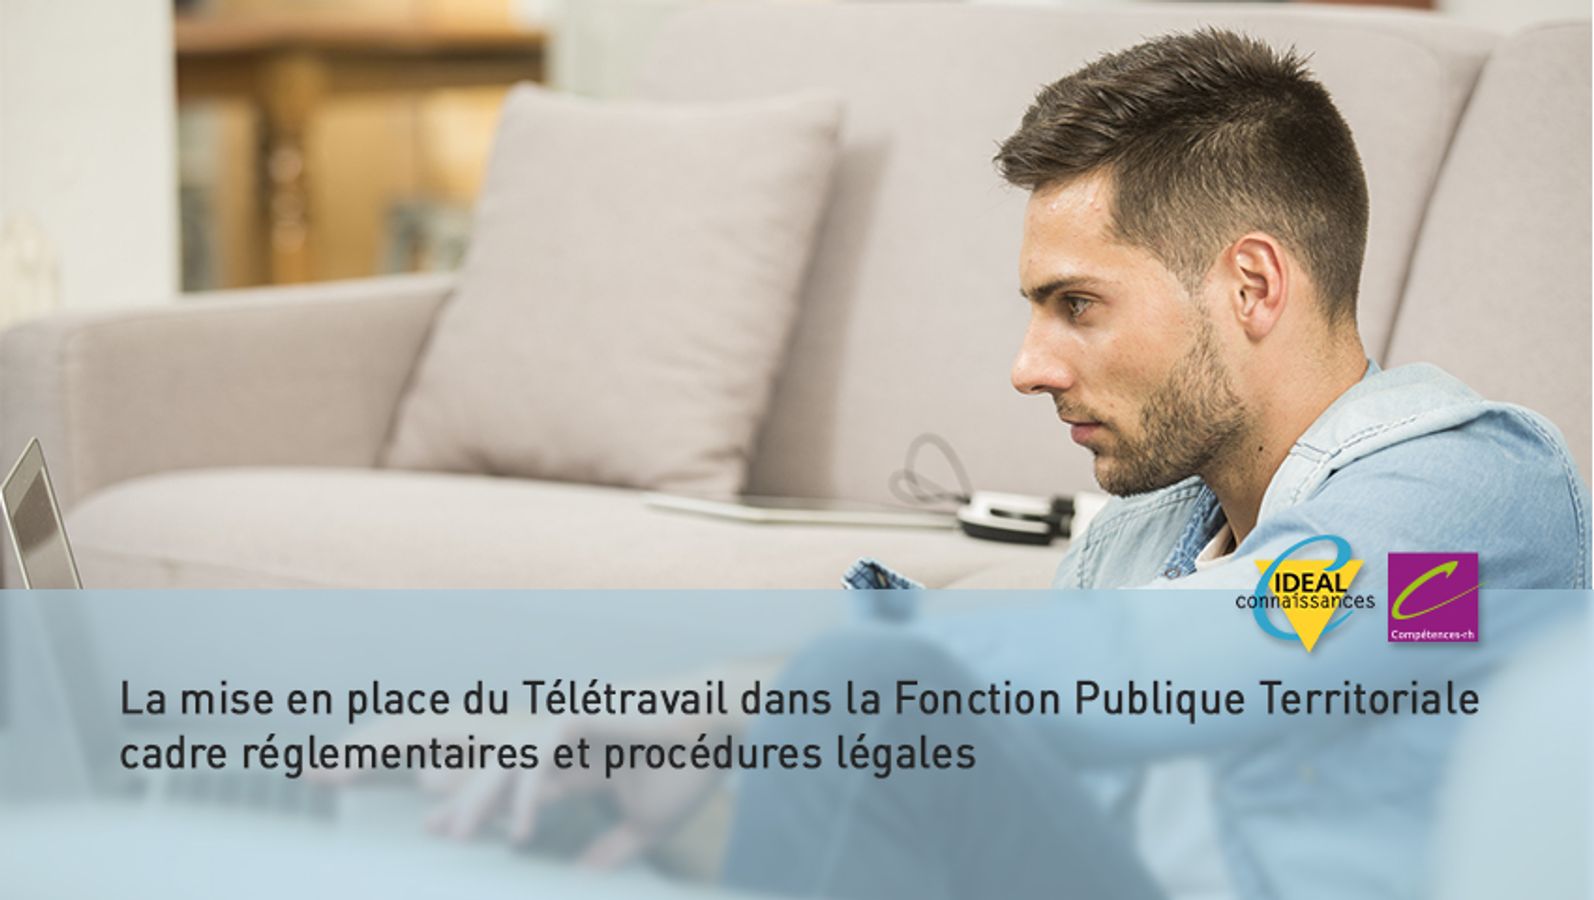 La mise en place du Télétravail dans la Fonction Publique Territoriale : cadre réglementaires et procédures légales